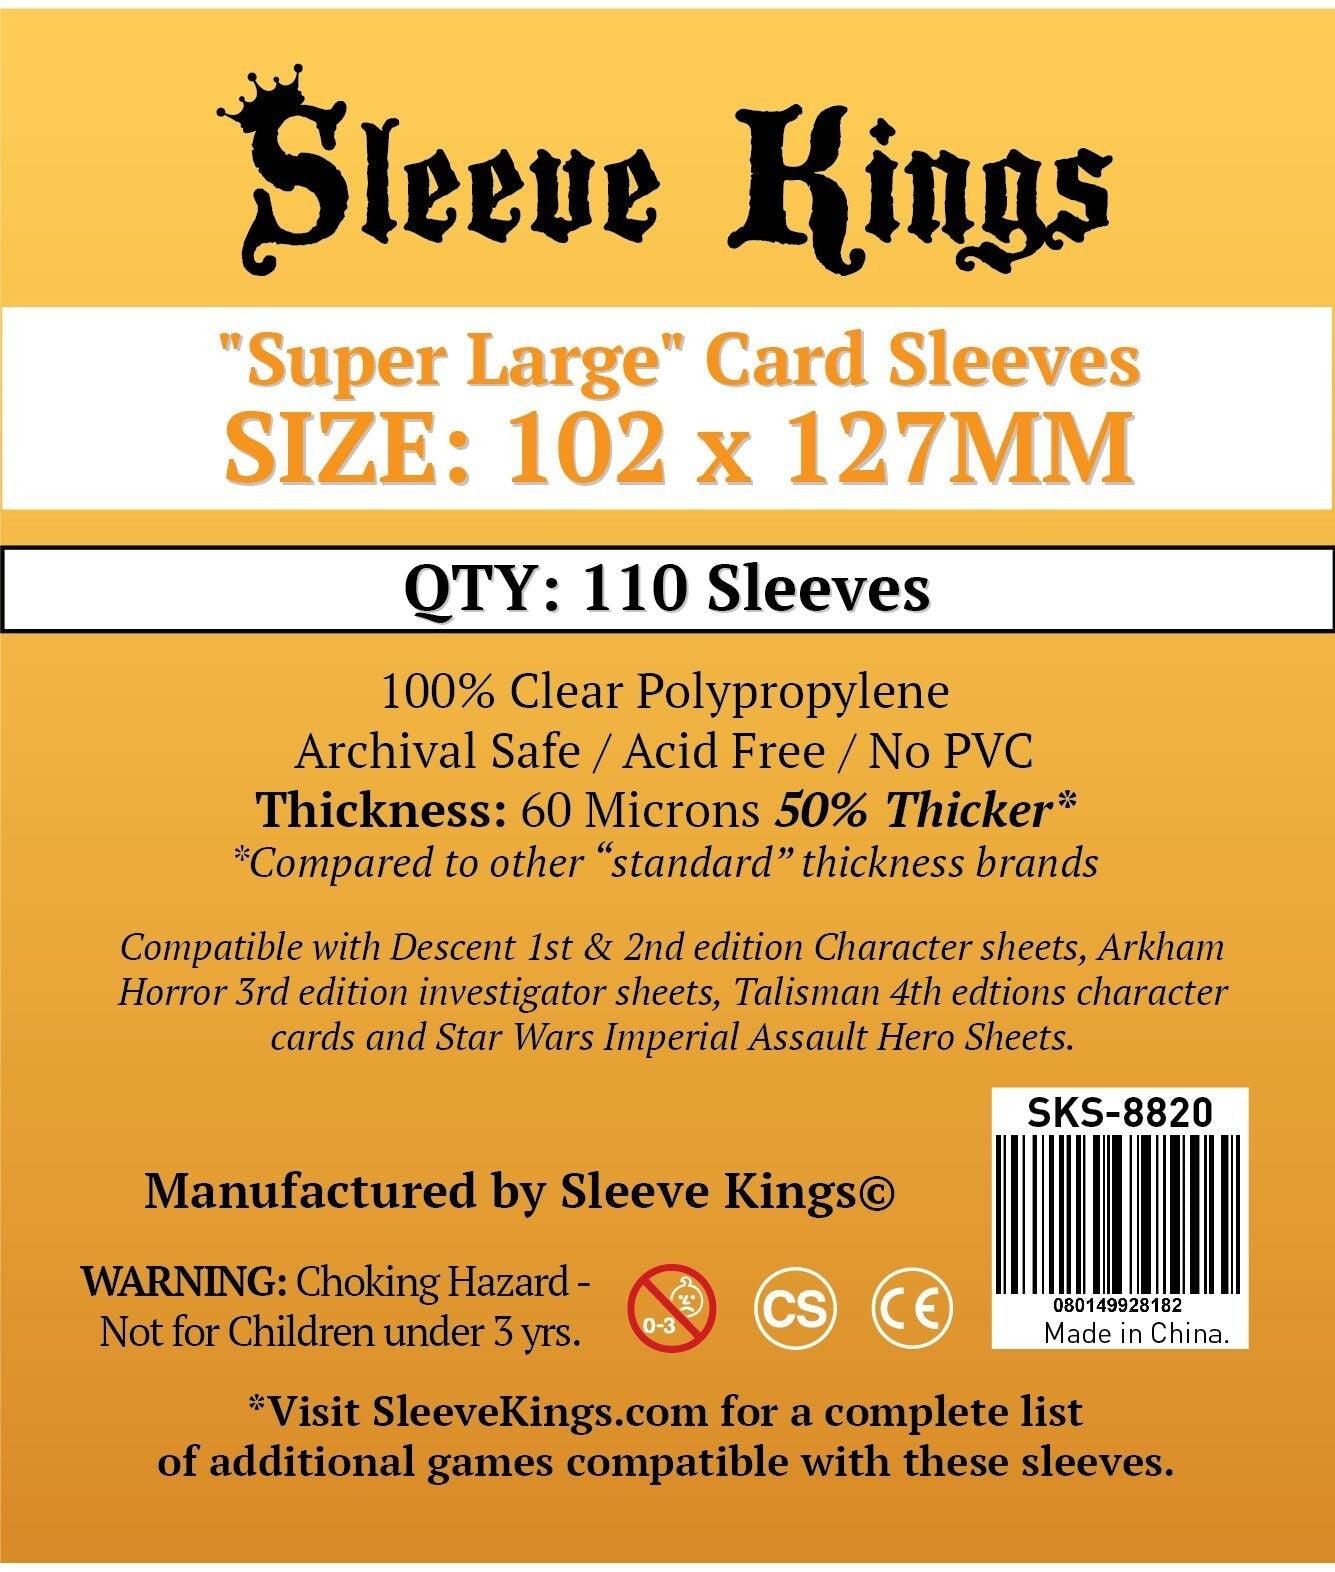 VR-67724 Sleeve Kings Board Game Sleeves "Super Large" (102mm x 127mm) (110 Sleeves Per Pack) - Sleeve Kings - Titan Pop Culture